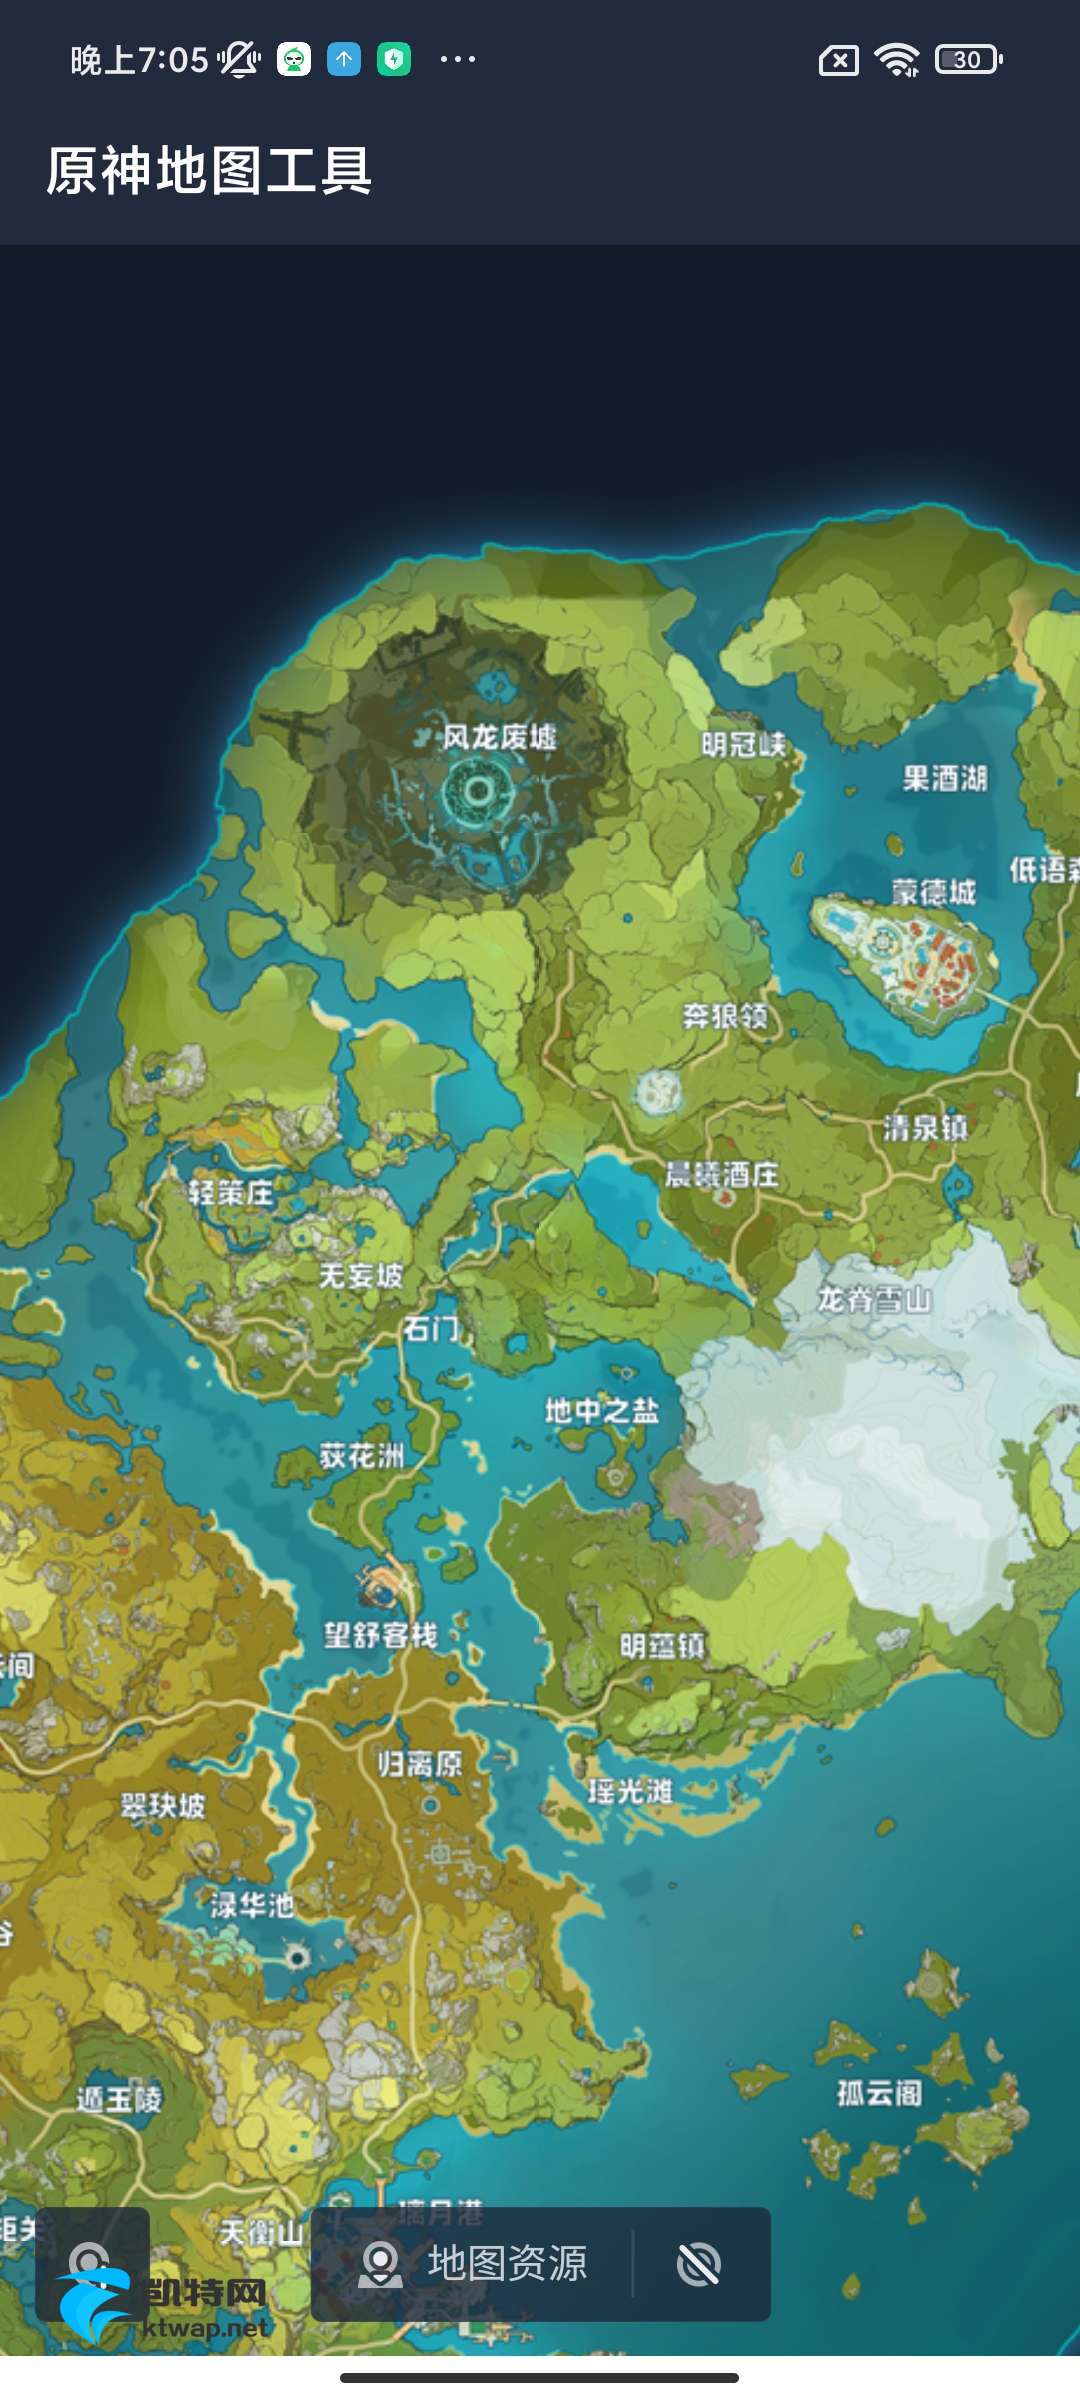 【分享】原神地图工具1.0